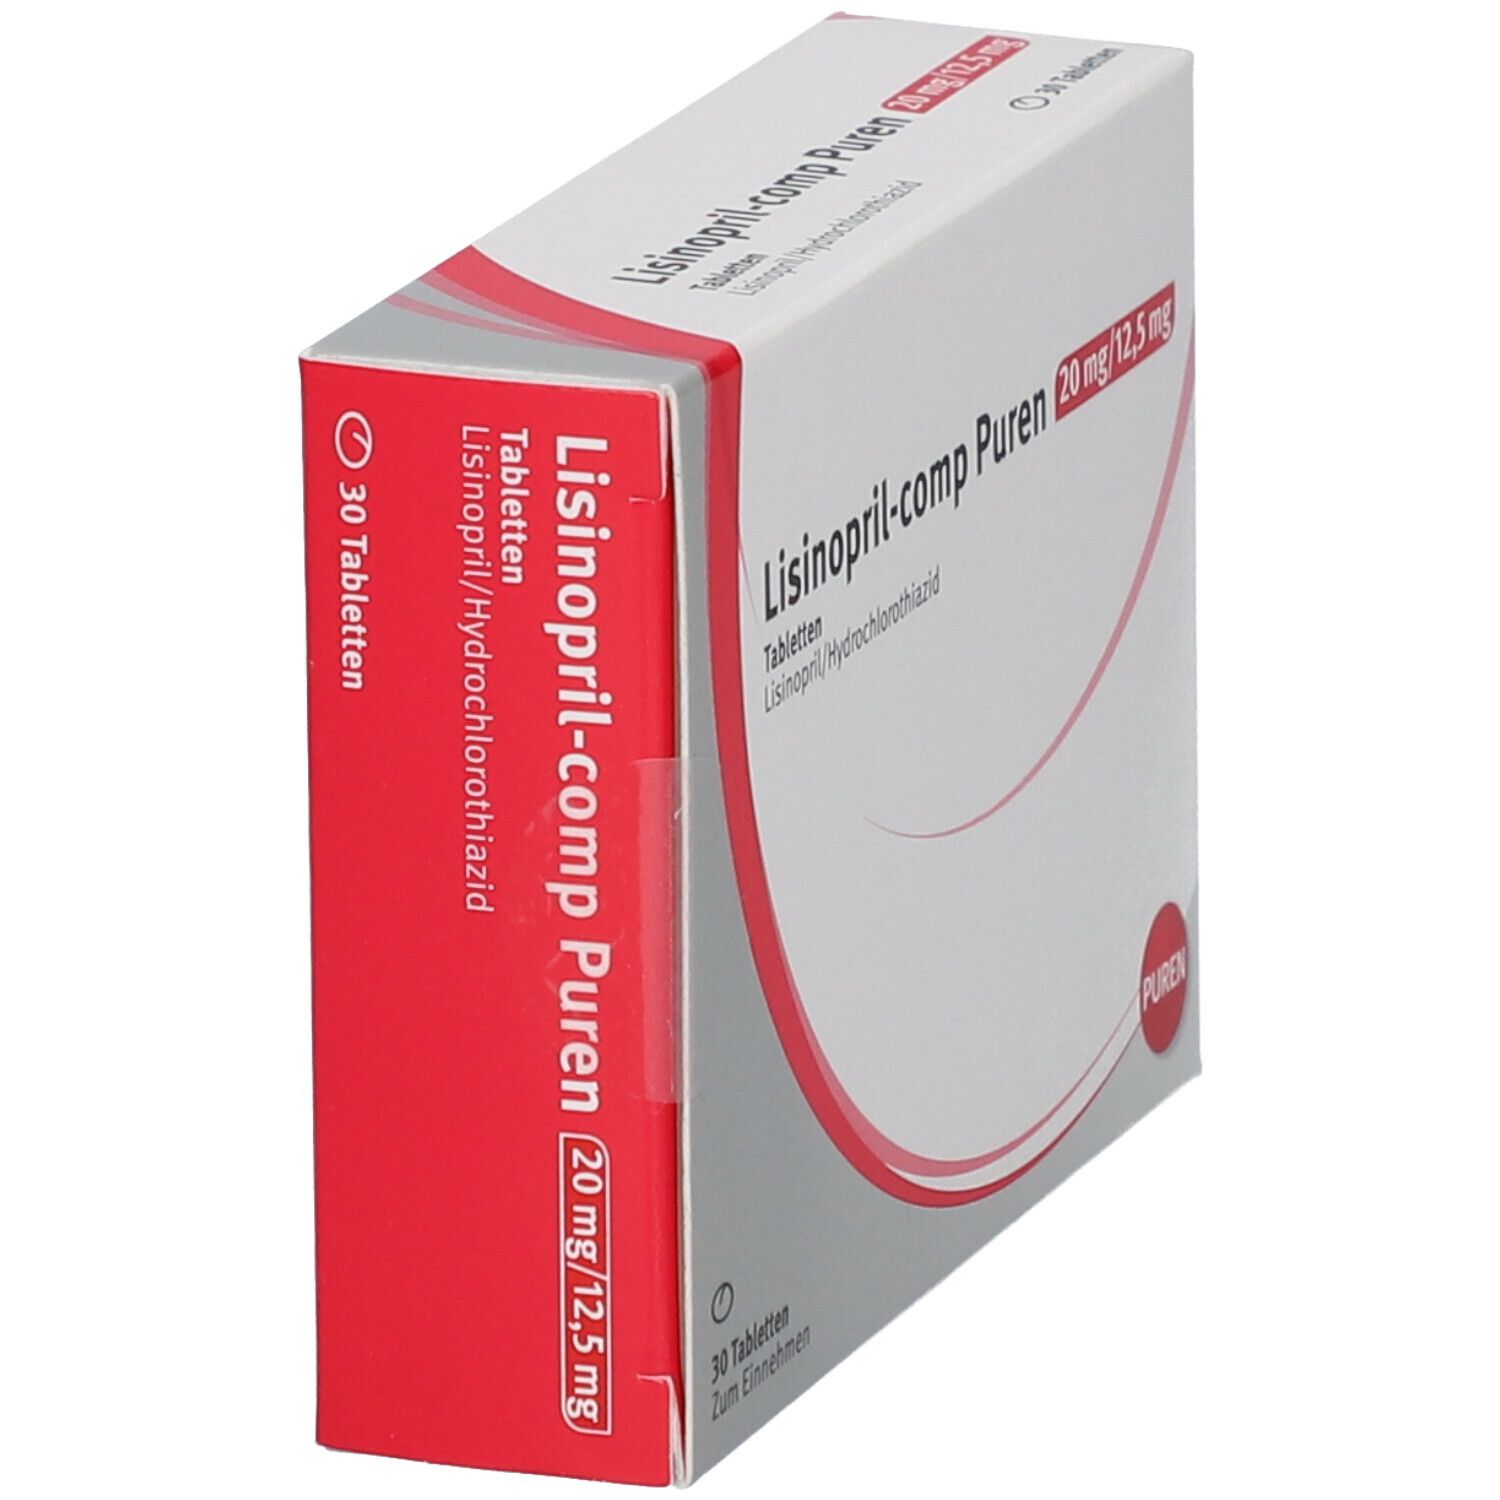 Lisinopril-comp PUREN 20 mg/12,5 mg